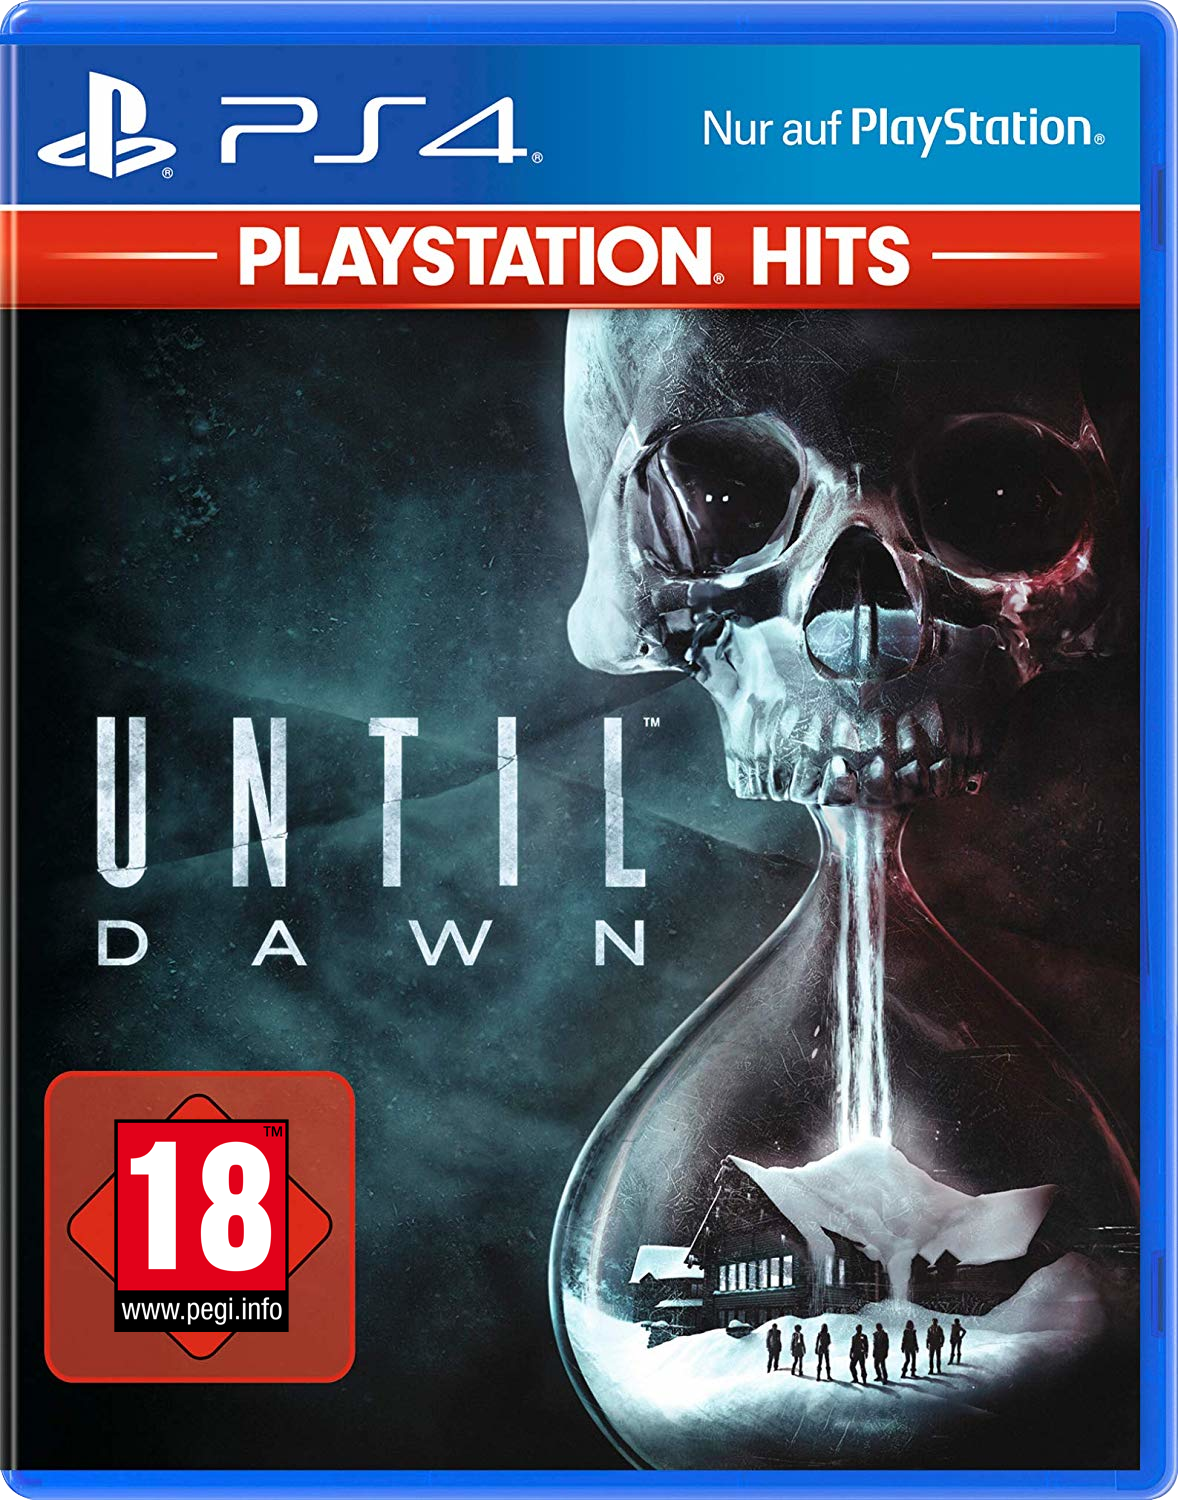 PlayStation Hits: Until Dawn - PlayStation 4 - Deutsch